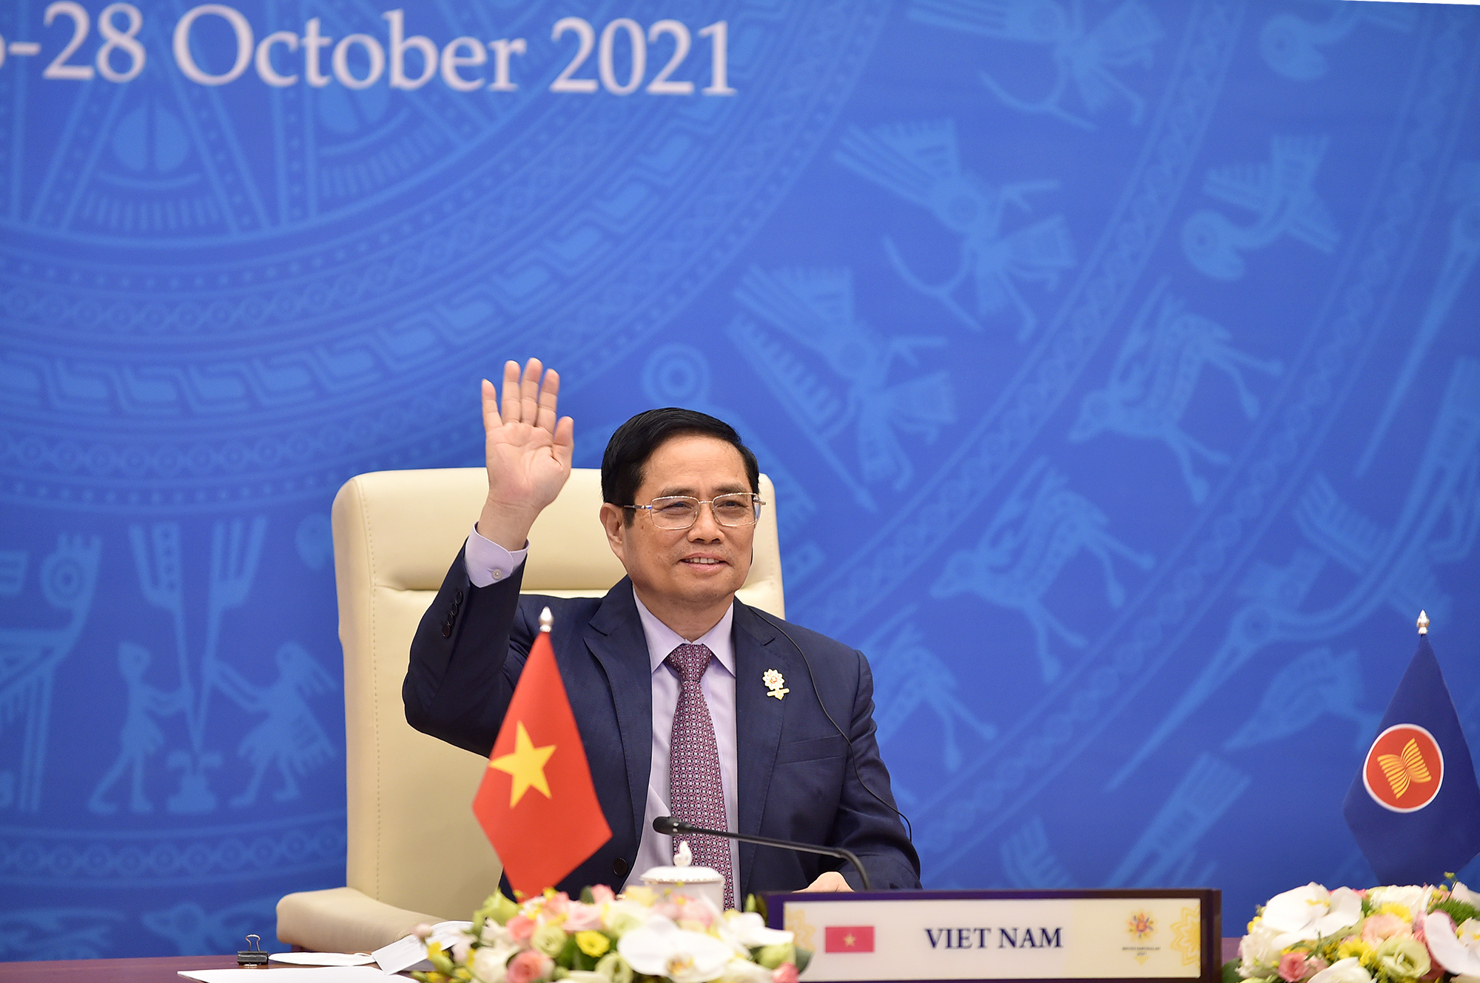 Thủ tướng Chính phủ Phạm Minh Chính tham dự Lễ bế mạc Hội nghị Cấp cao ASEAN lần thứ 38 và 39 và các Hội nghị Cấp cao liên quan. Nguồn: chinhphu.vn